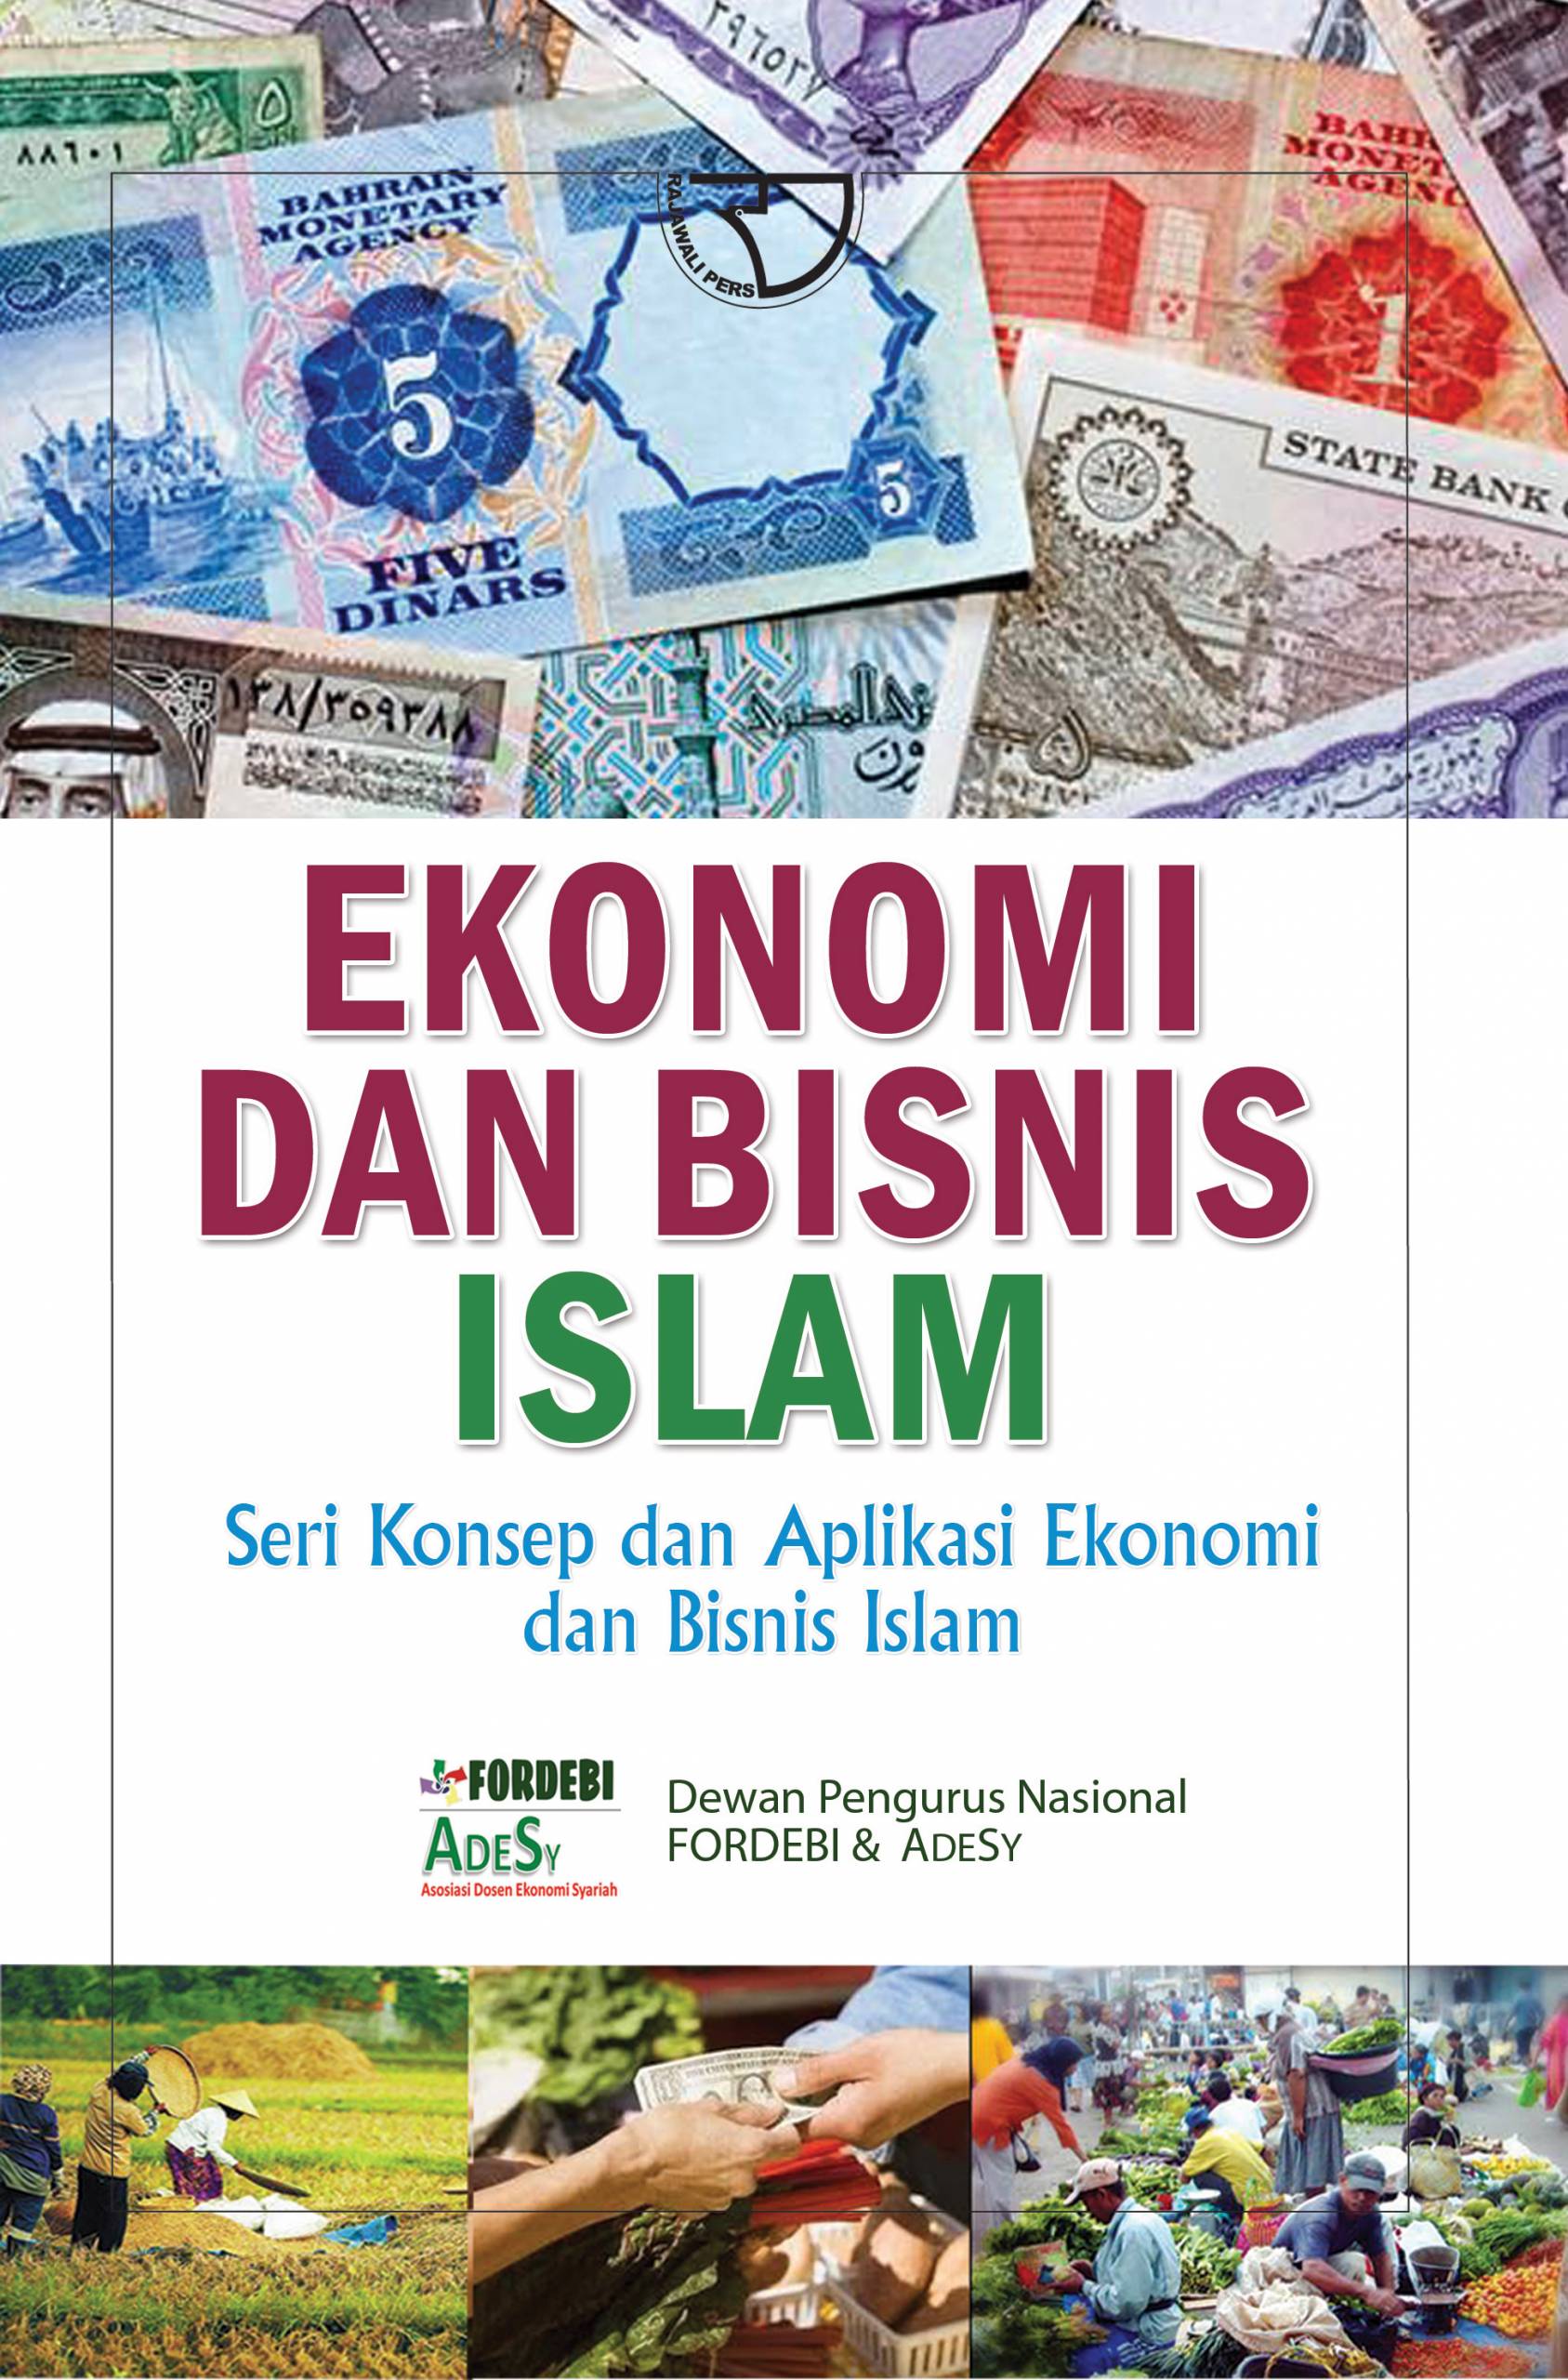 Ekonomi dan bisnis islam :  seri konsep dan aplikasi ekonomi dan bisnis islam